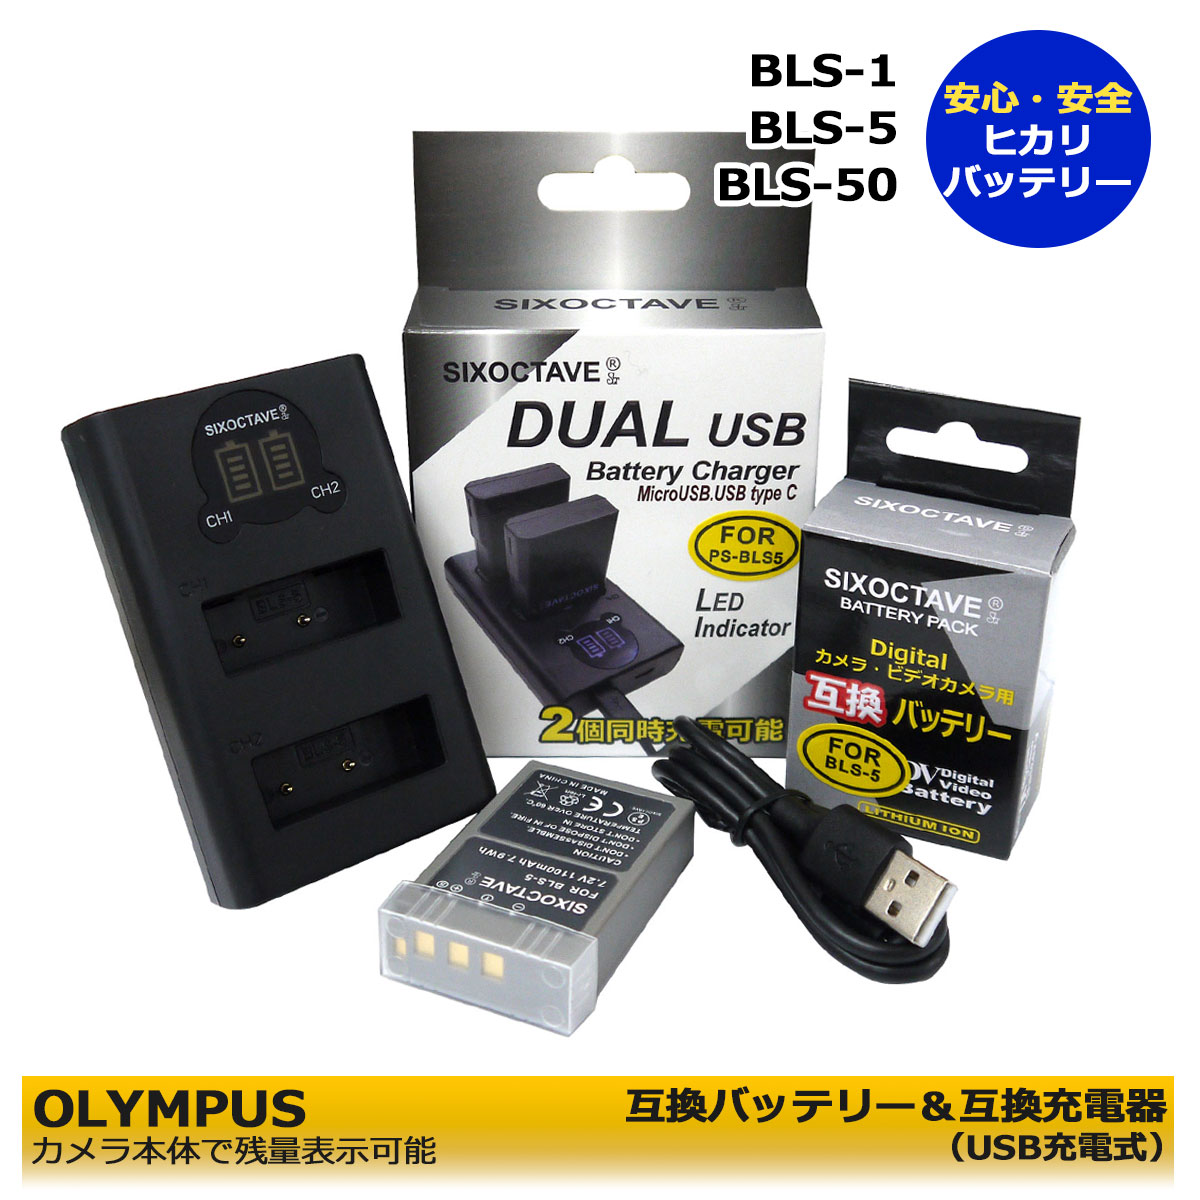 BLS-5 / BLS-50 / PS-BLS5 / BLS-1 / PS-BLS1【送料無料】オリンパス 互換バッテリー 1個 と 互換チャージャーの2点セットE-PL3 / E-PM1 / E-PL1s / E-PL7 / E-M10 Stylus 1 OM-D E-M10 Mark II / E−M10 Mark IV 等対応 Stylus 1s デュアル